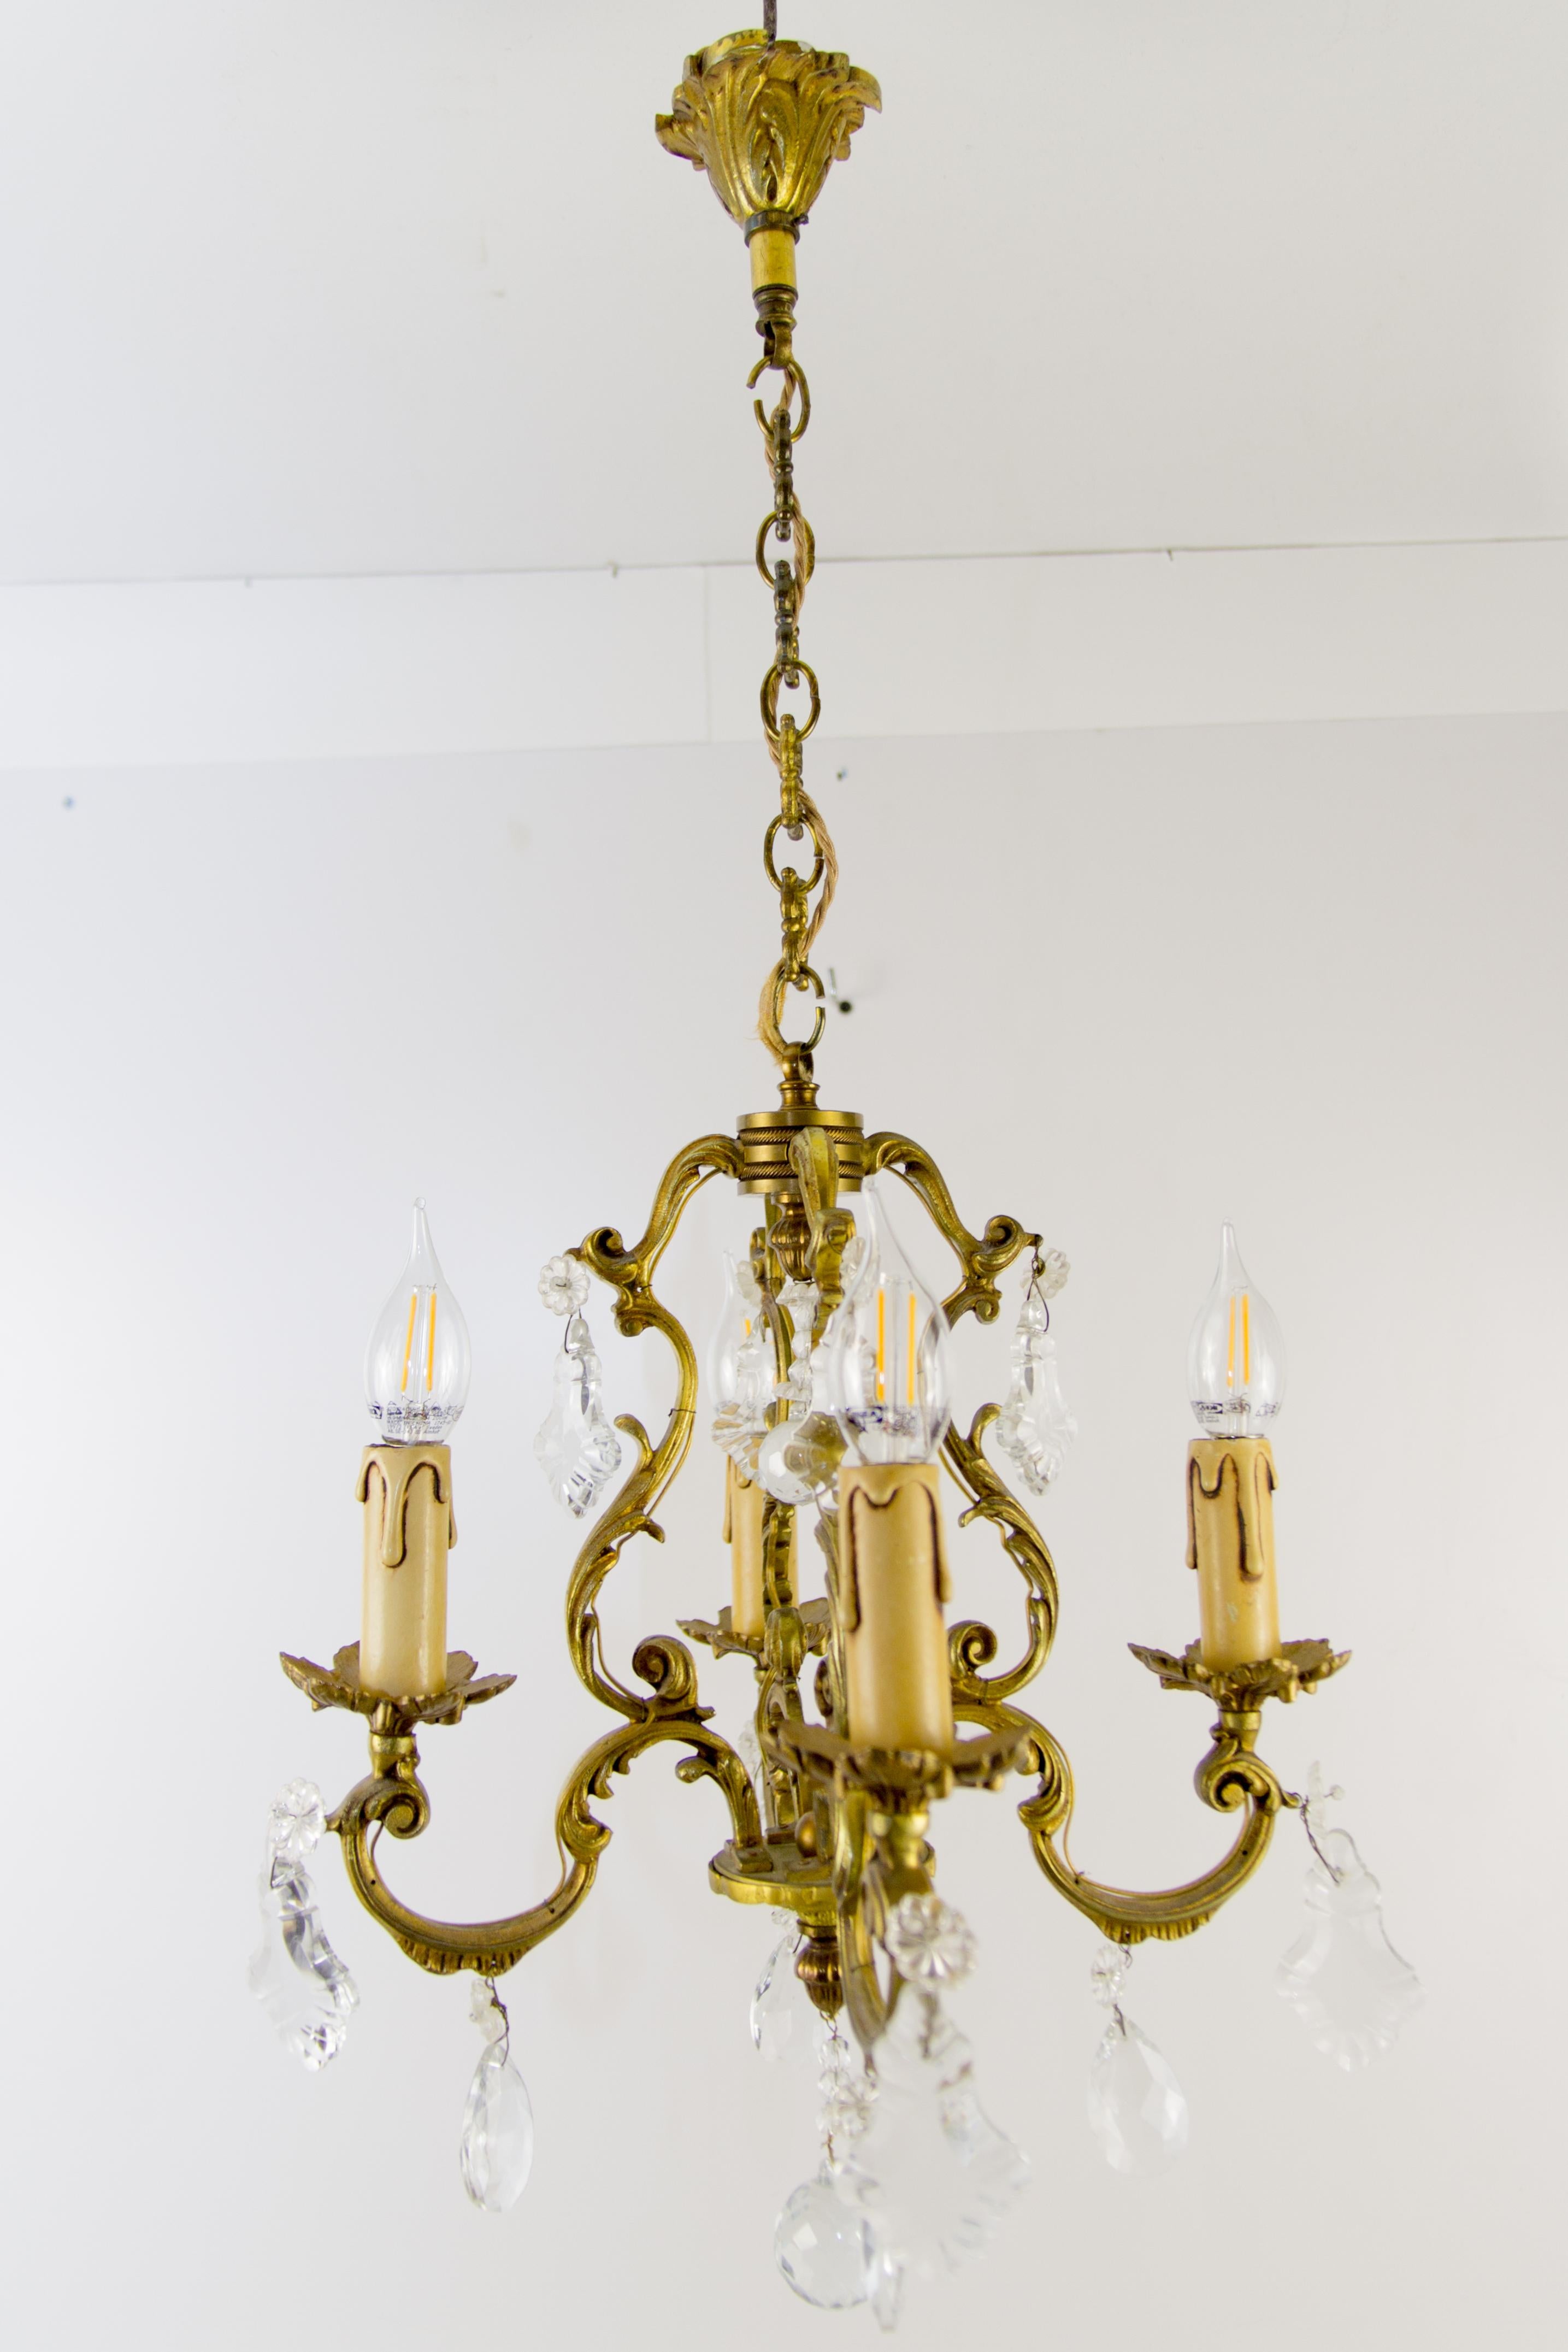 Très beau lustre à quatre lumières en bronze et cristal de style Louis XV ou Rococo.
Quatre bras en bronze, chacun avec une douille pour une ampoule de taille E14.
Mesures : hauteur : 74,5 cm avec chaîne, 55 cm sans chaîne ; diamètre : 38 cm.